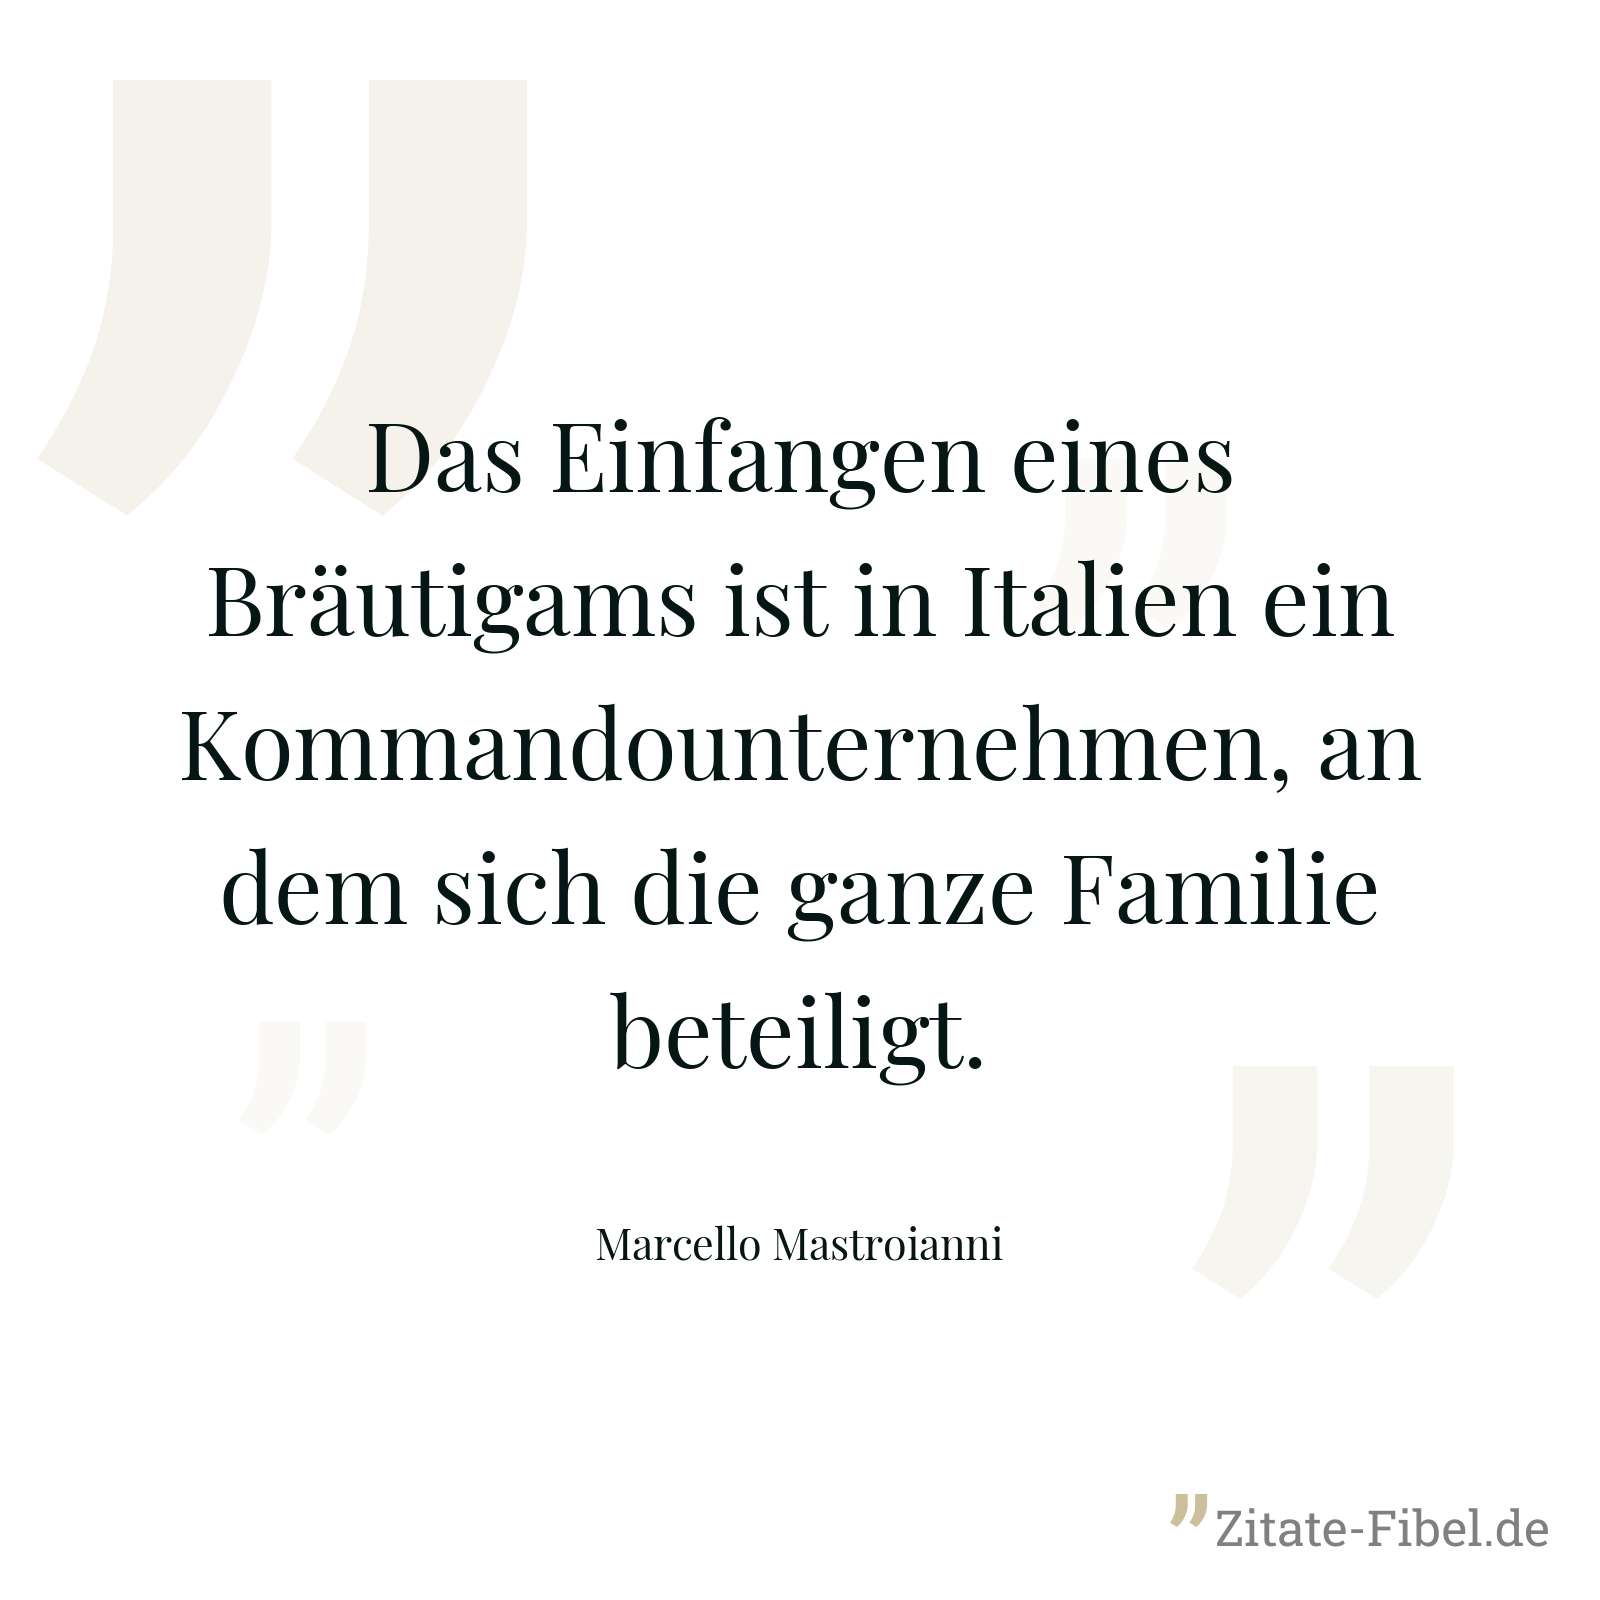 Das Einfangen eines Bräutigams ist in Italien ein Kommandounternehmen, an dem sich die ganze Familie beteiligt. - Marcello Mastroianni